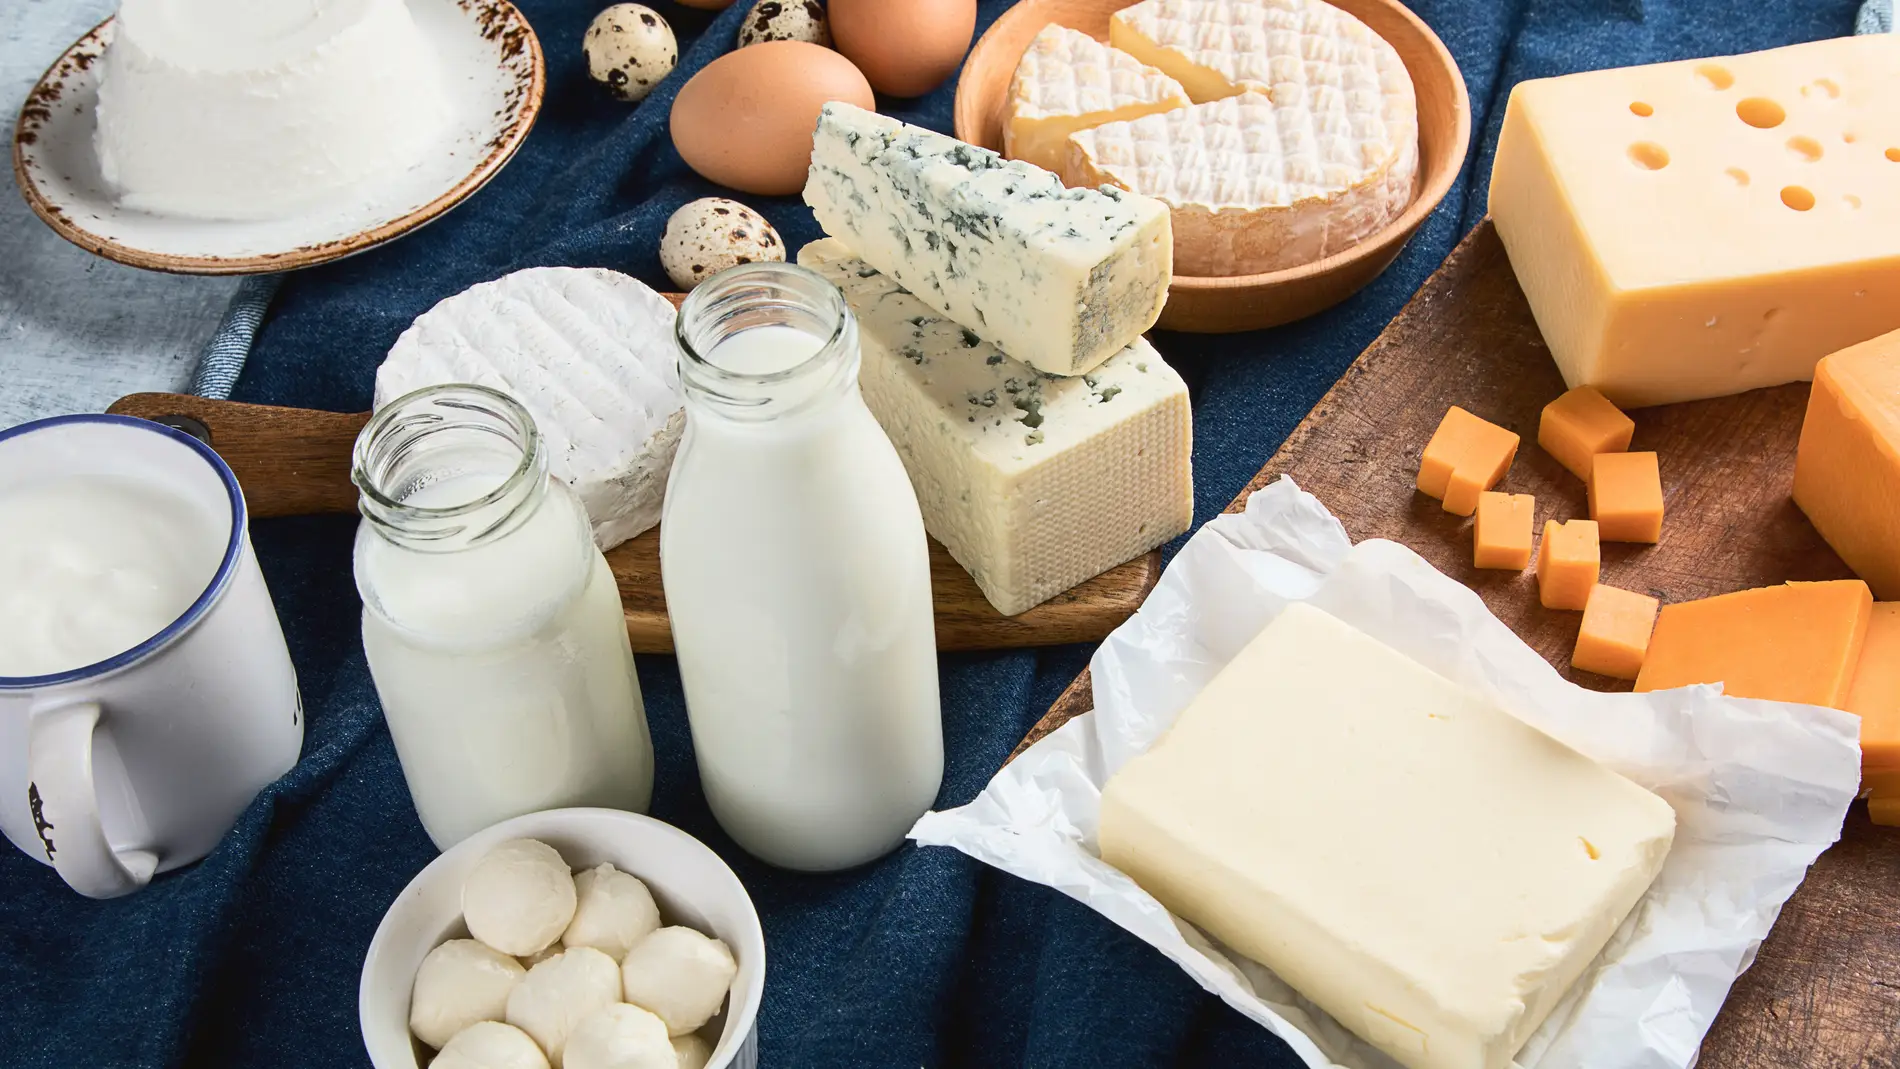 Leche, queso y yogur son productos lácteos.